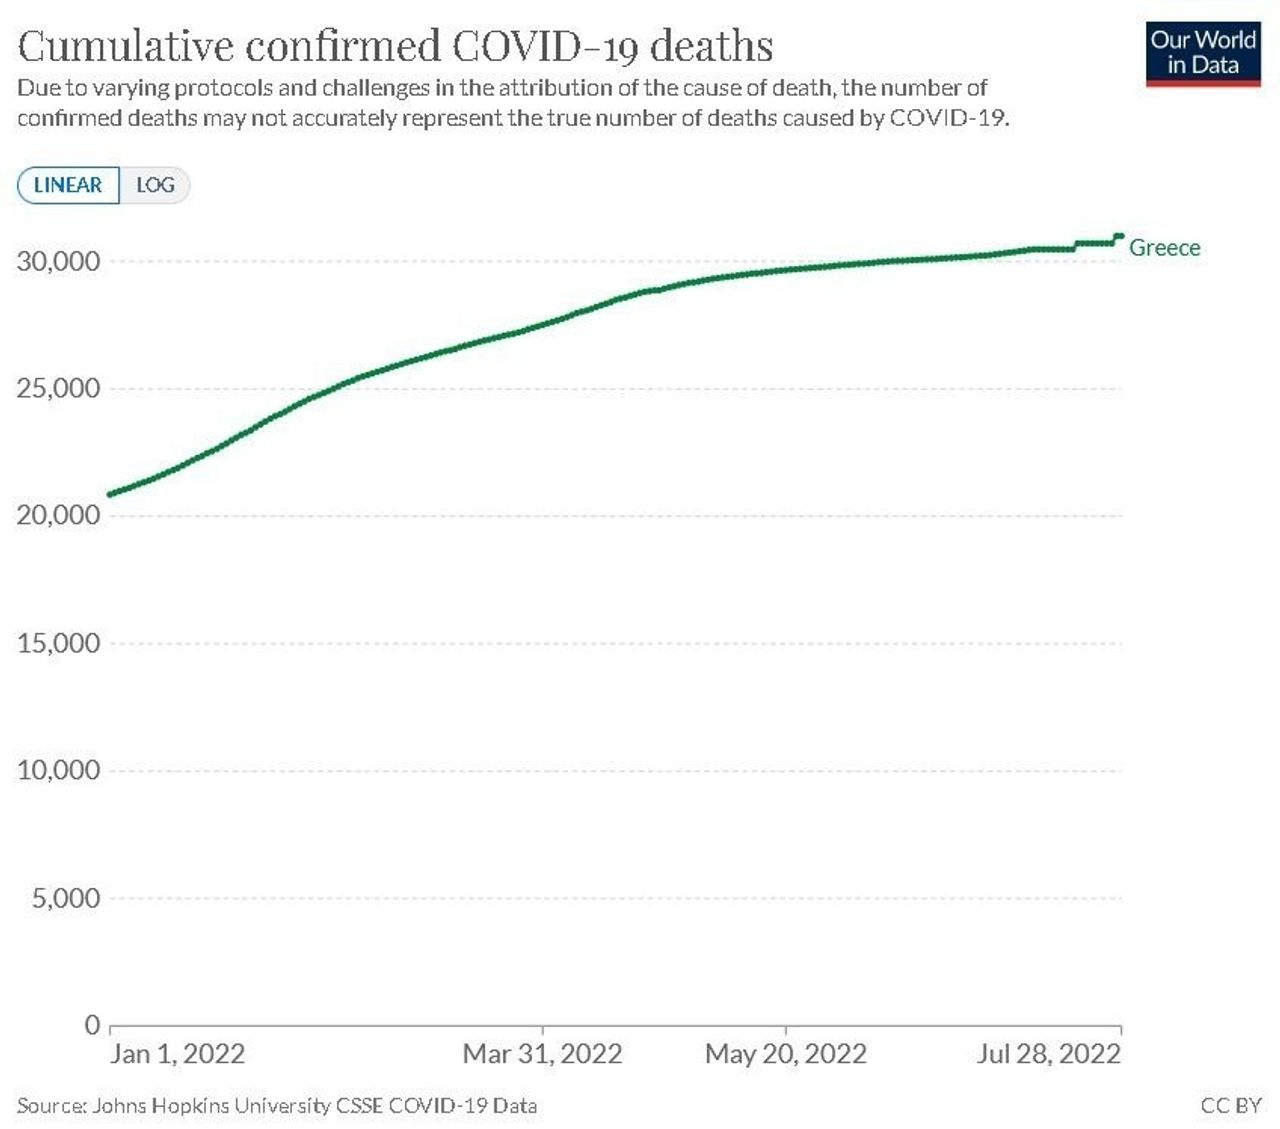 Καθώς τα κρούσματα και οι θάνατοι συνεχίζουν να αυξάνονται, η ελληνική κυβέρνηση προχωρά στην εβδομαδιαία αναφορά για τον COVID